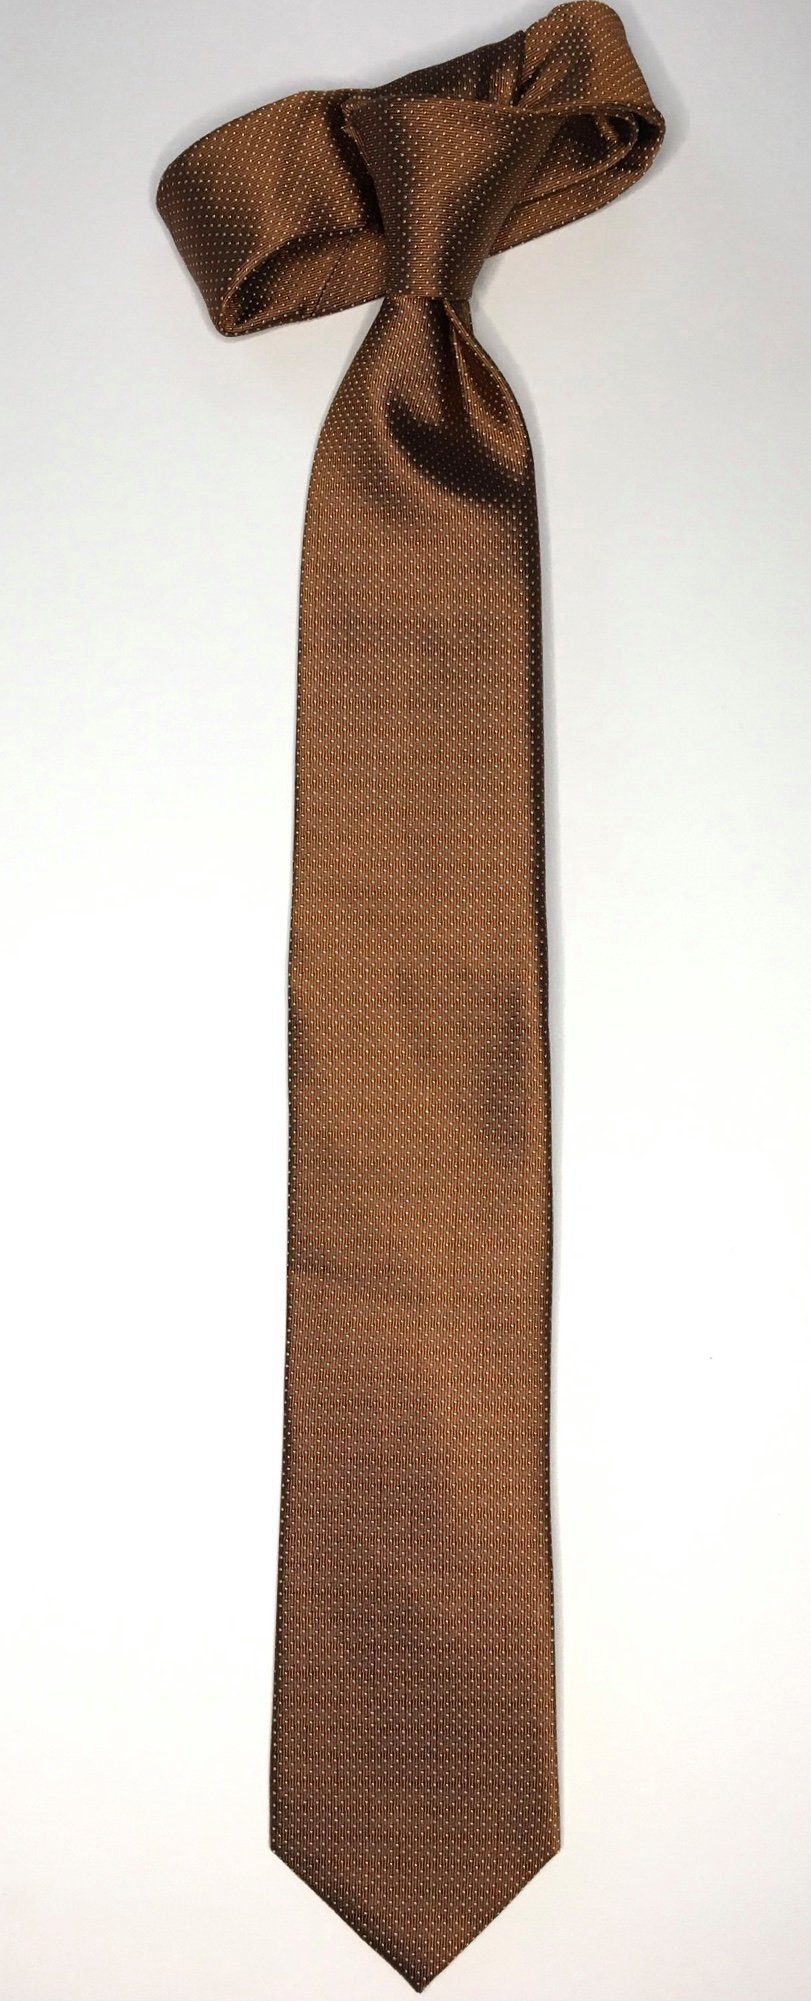 Design Krawatte Cognac 6cm Krawatte edlen Seidenfalter Seidenfalter Picoté Krawatte Seidenfalter im Picoté